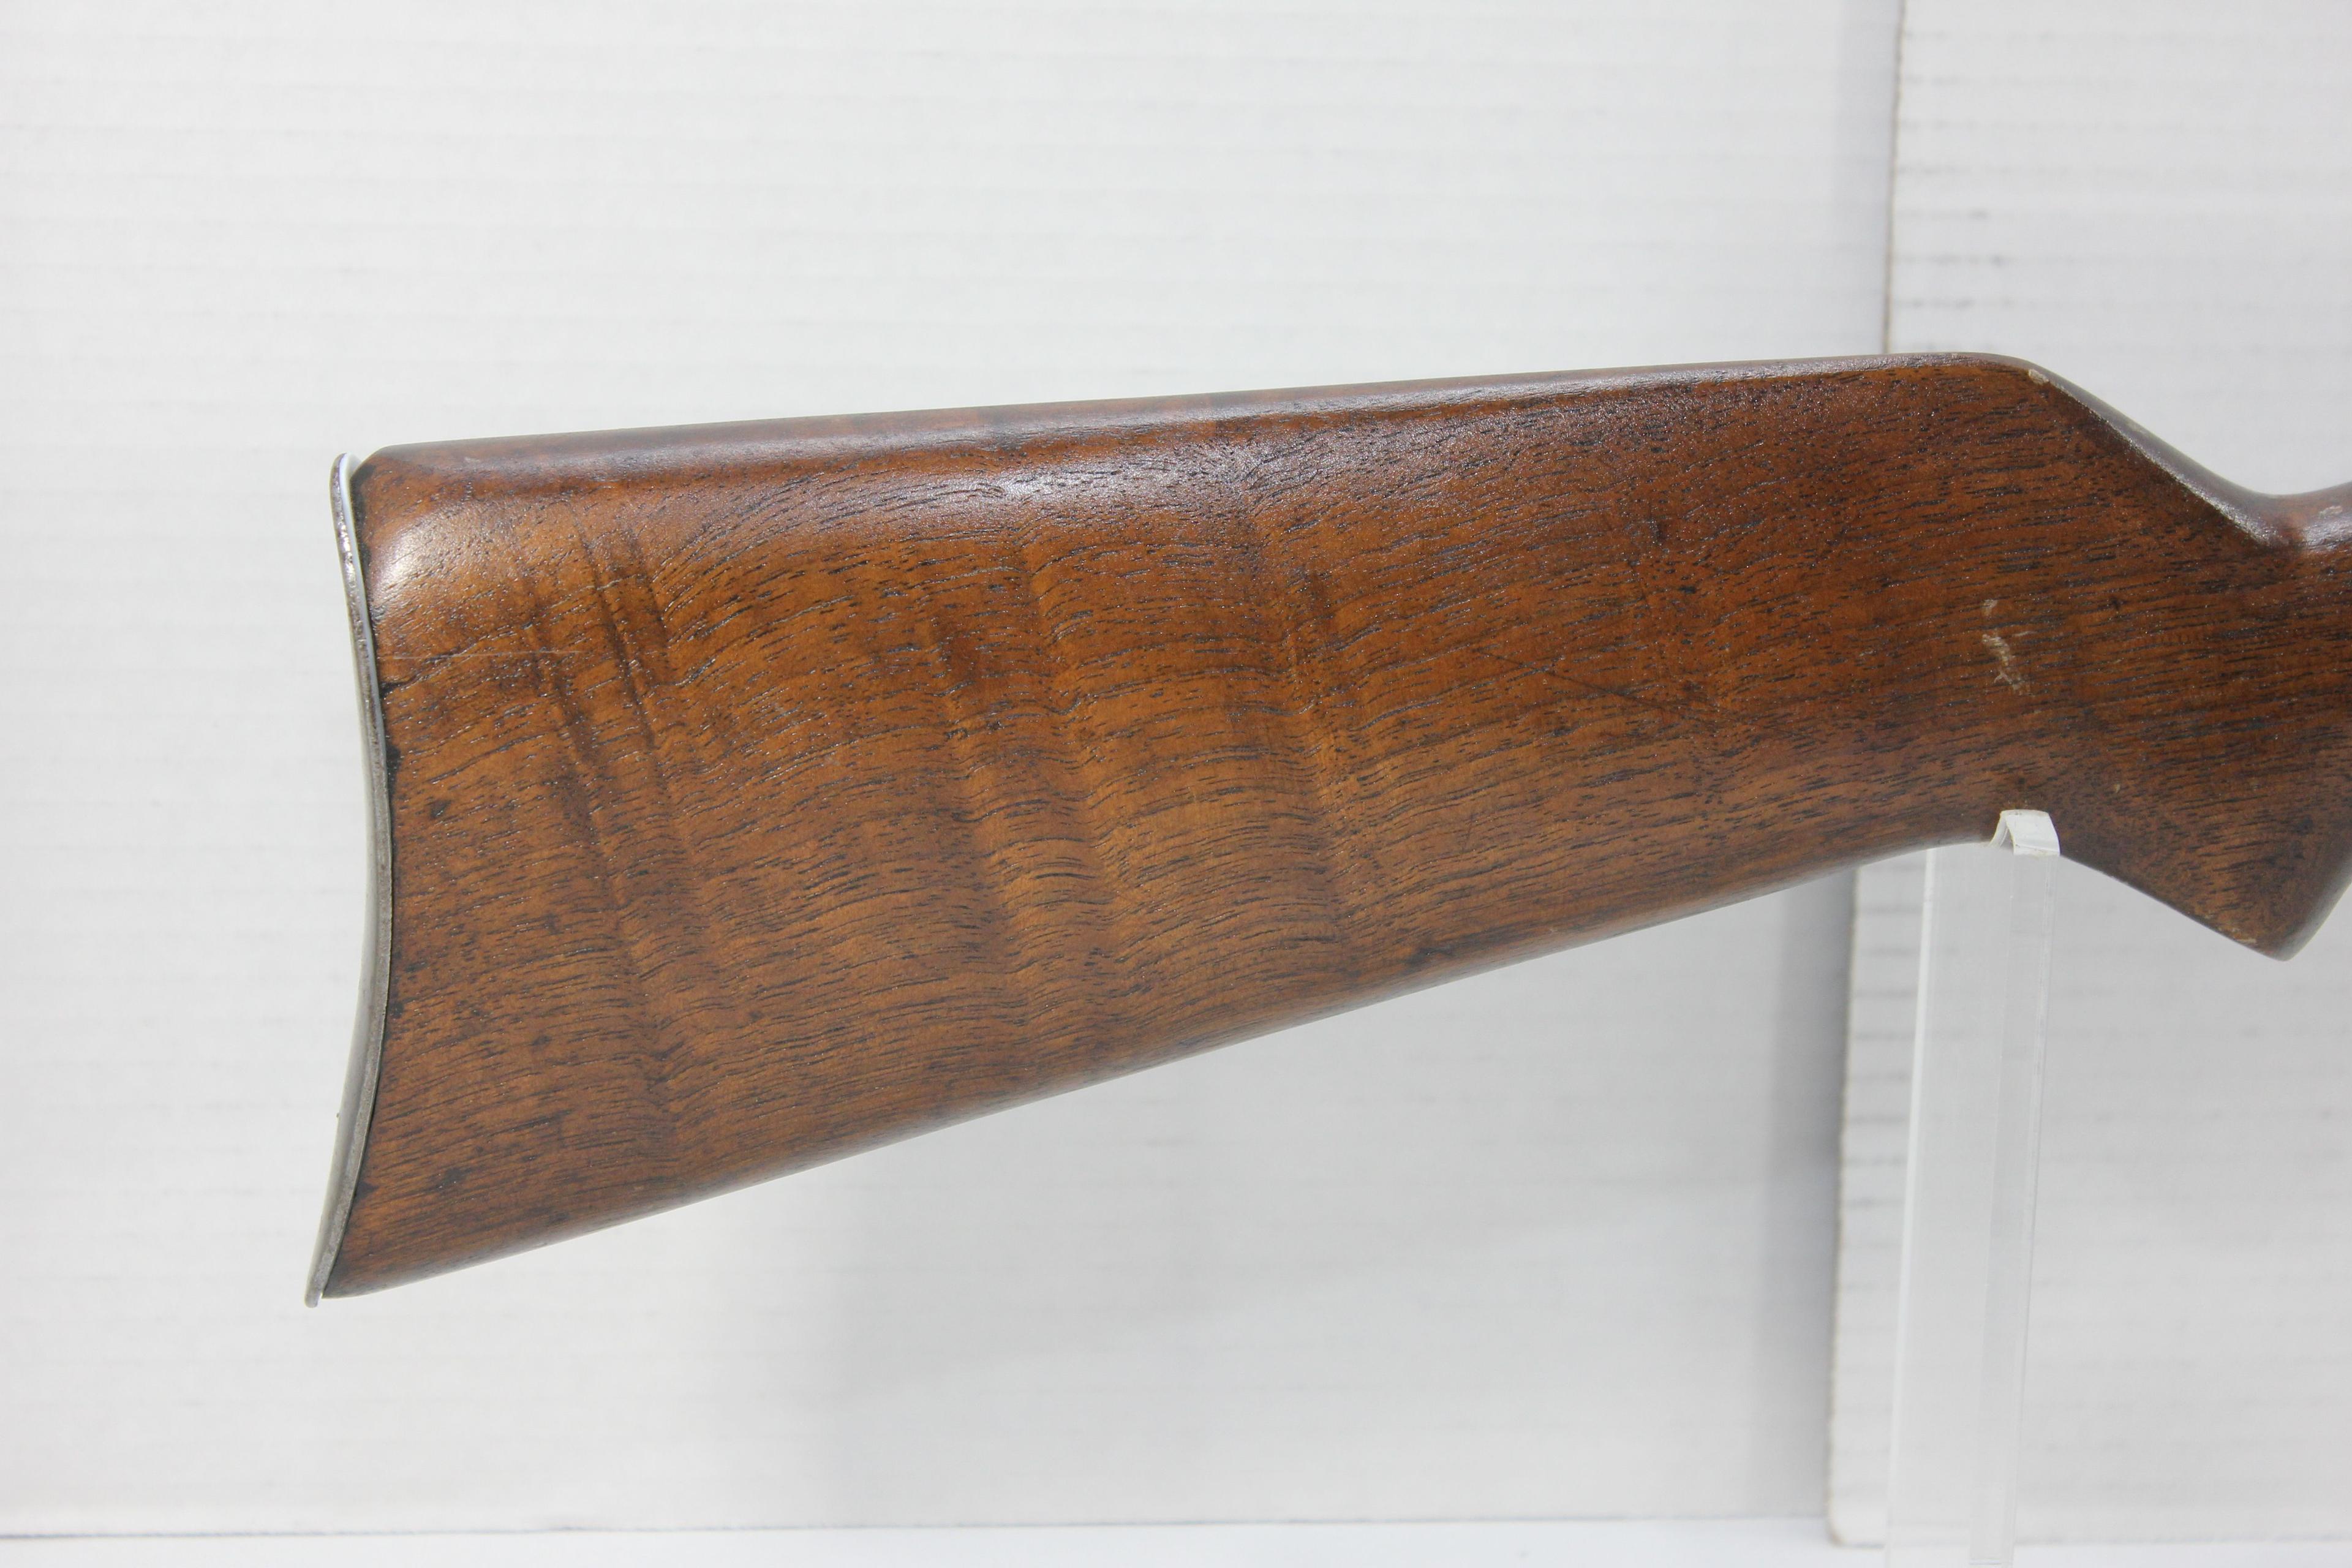 Stevens Model C Whippet .22 S/L/LR Rifle; SN N/A